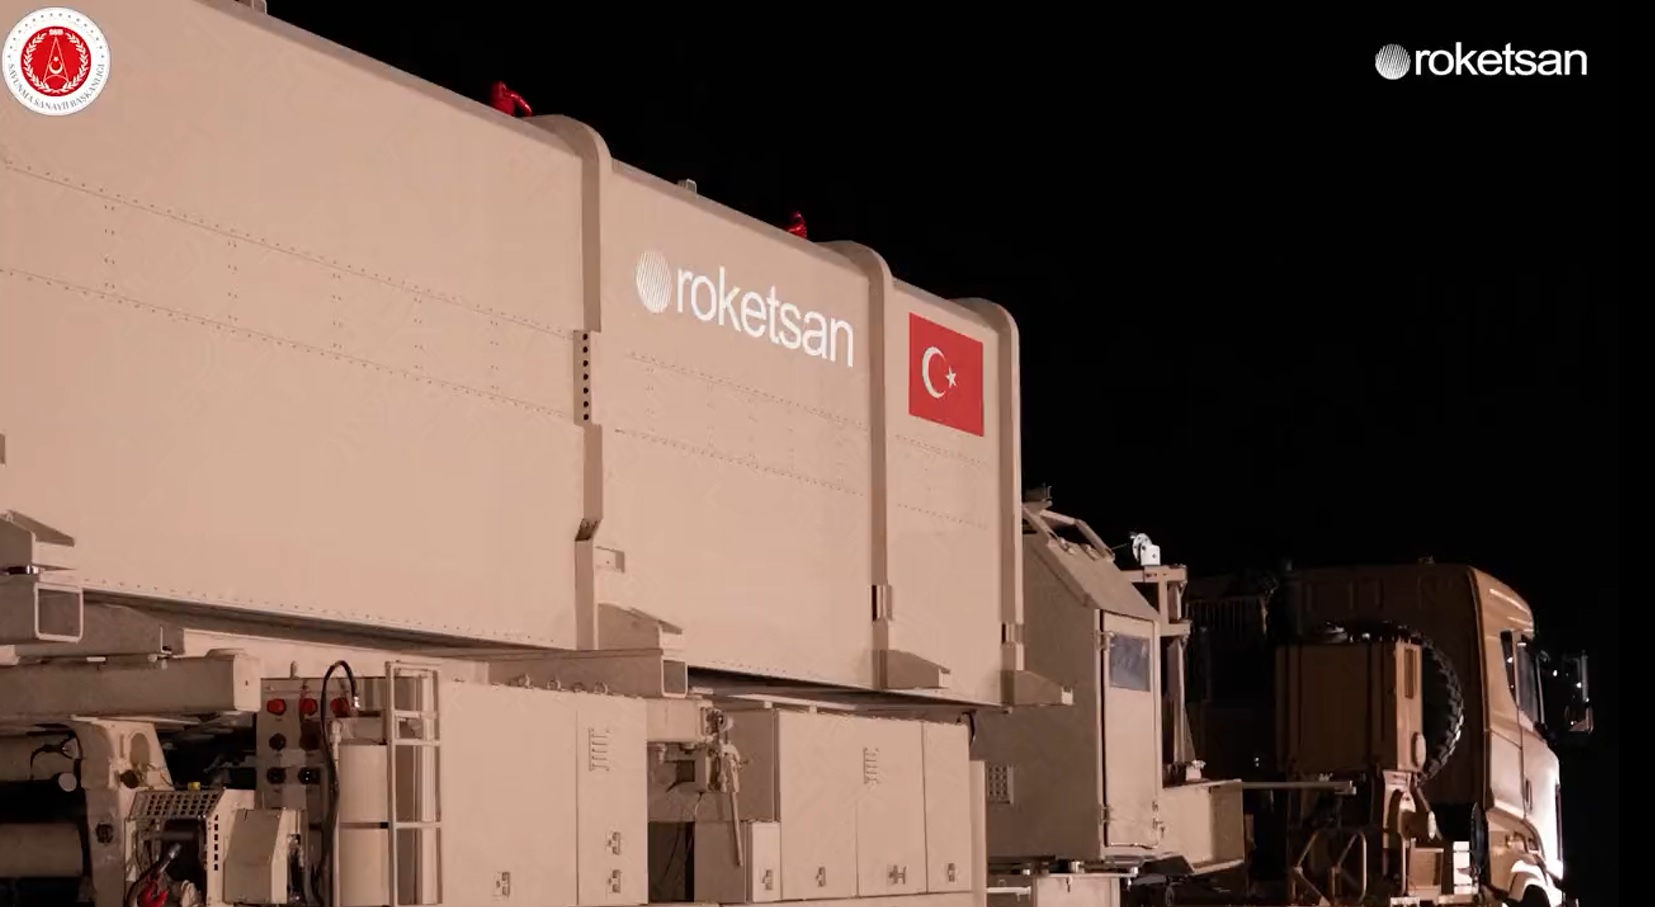 Roketsan presenta el CENK, el primer misil balístico de medio alcance de Turquía capaz de alcanzar objetivos situados a 1.000 km de distancia.